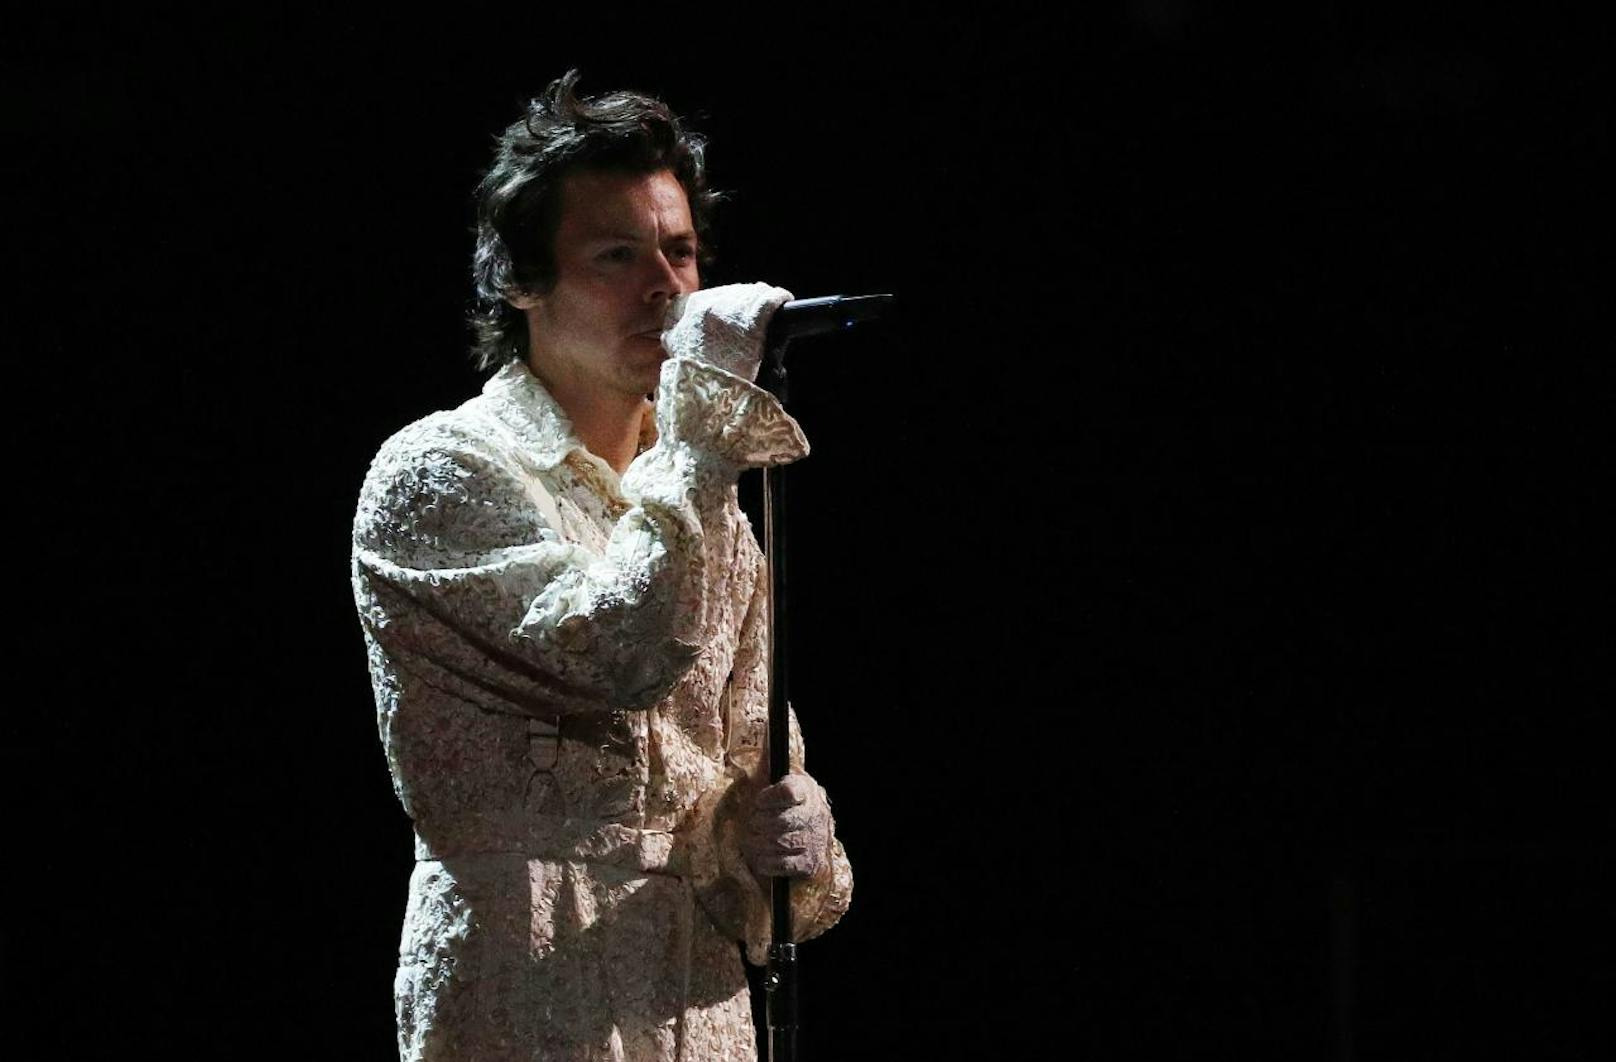 Zwar ging <b>Harry Styles </b>bei den Brit Awards 2020 leer aus, sorgte aber mit seiner Ballade "Falling" für einen der emotionalsten Auftritte.